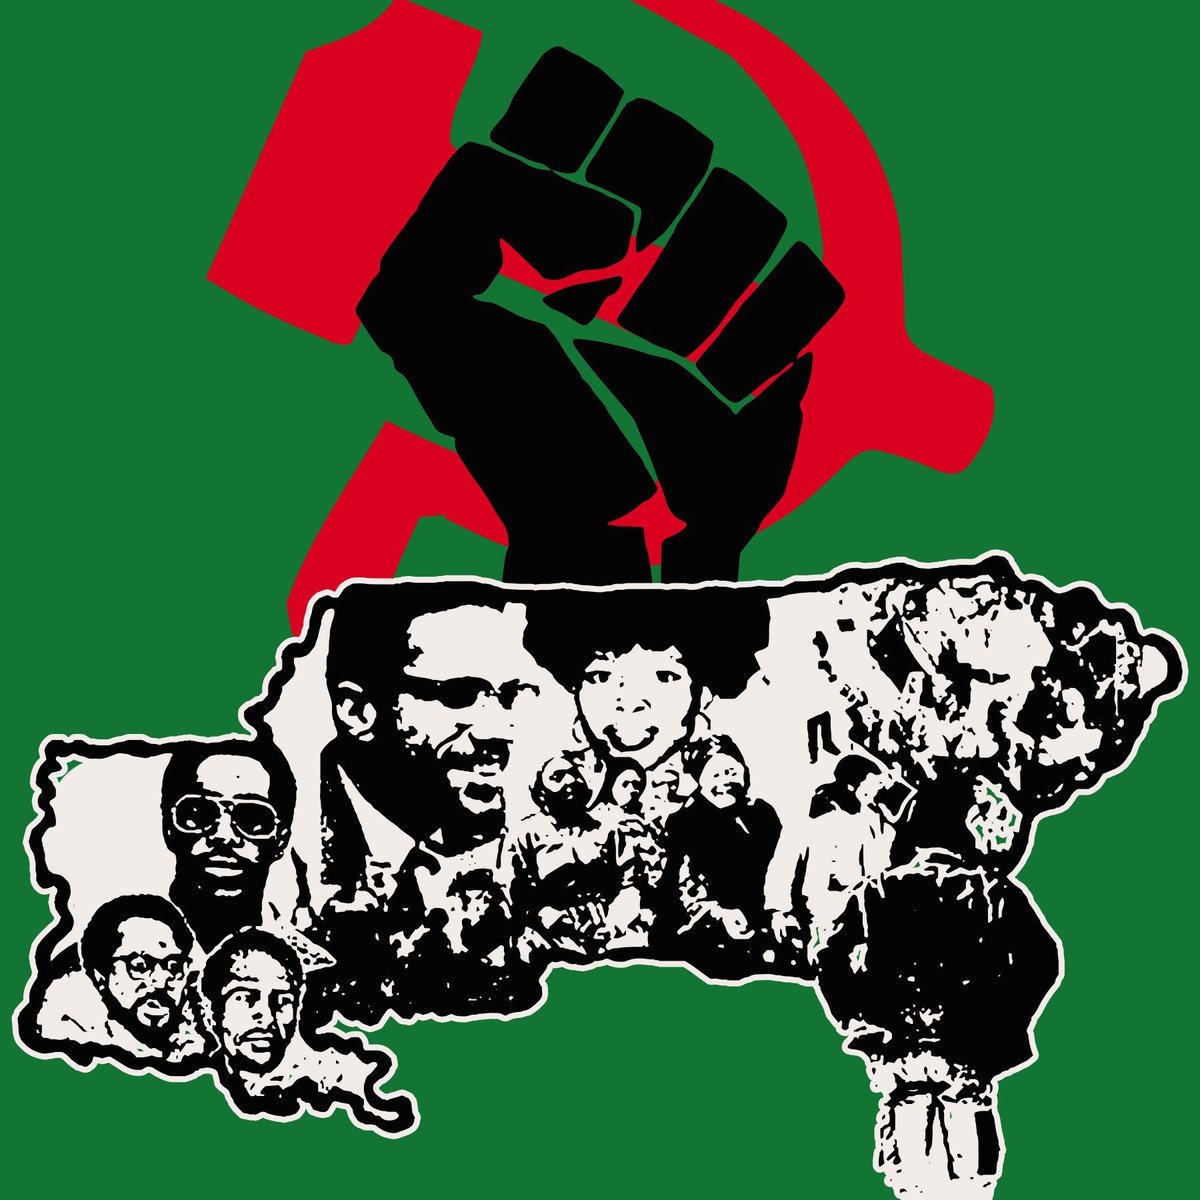 @PennDusko Yup #FreeTheLand #FreeNewAfrika